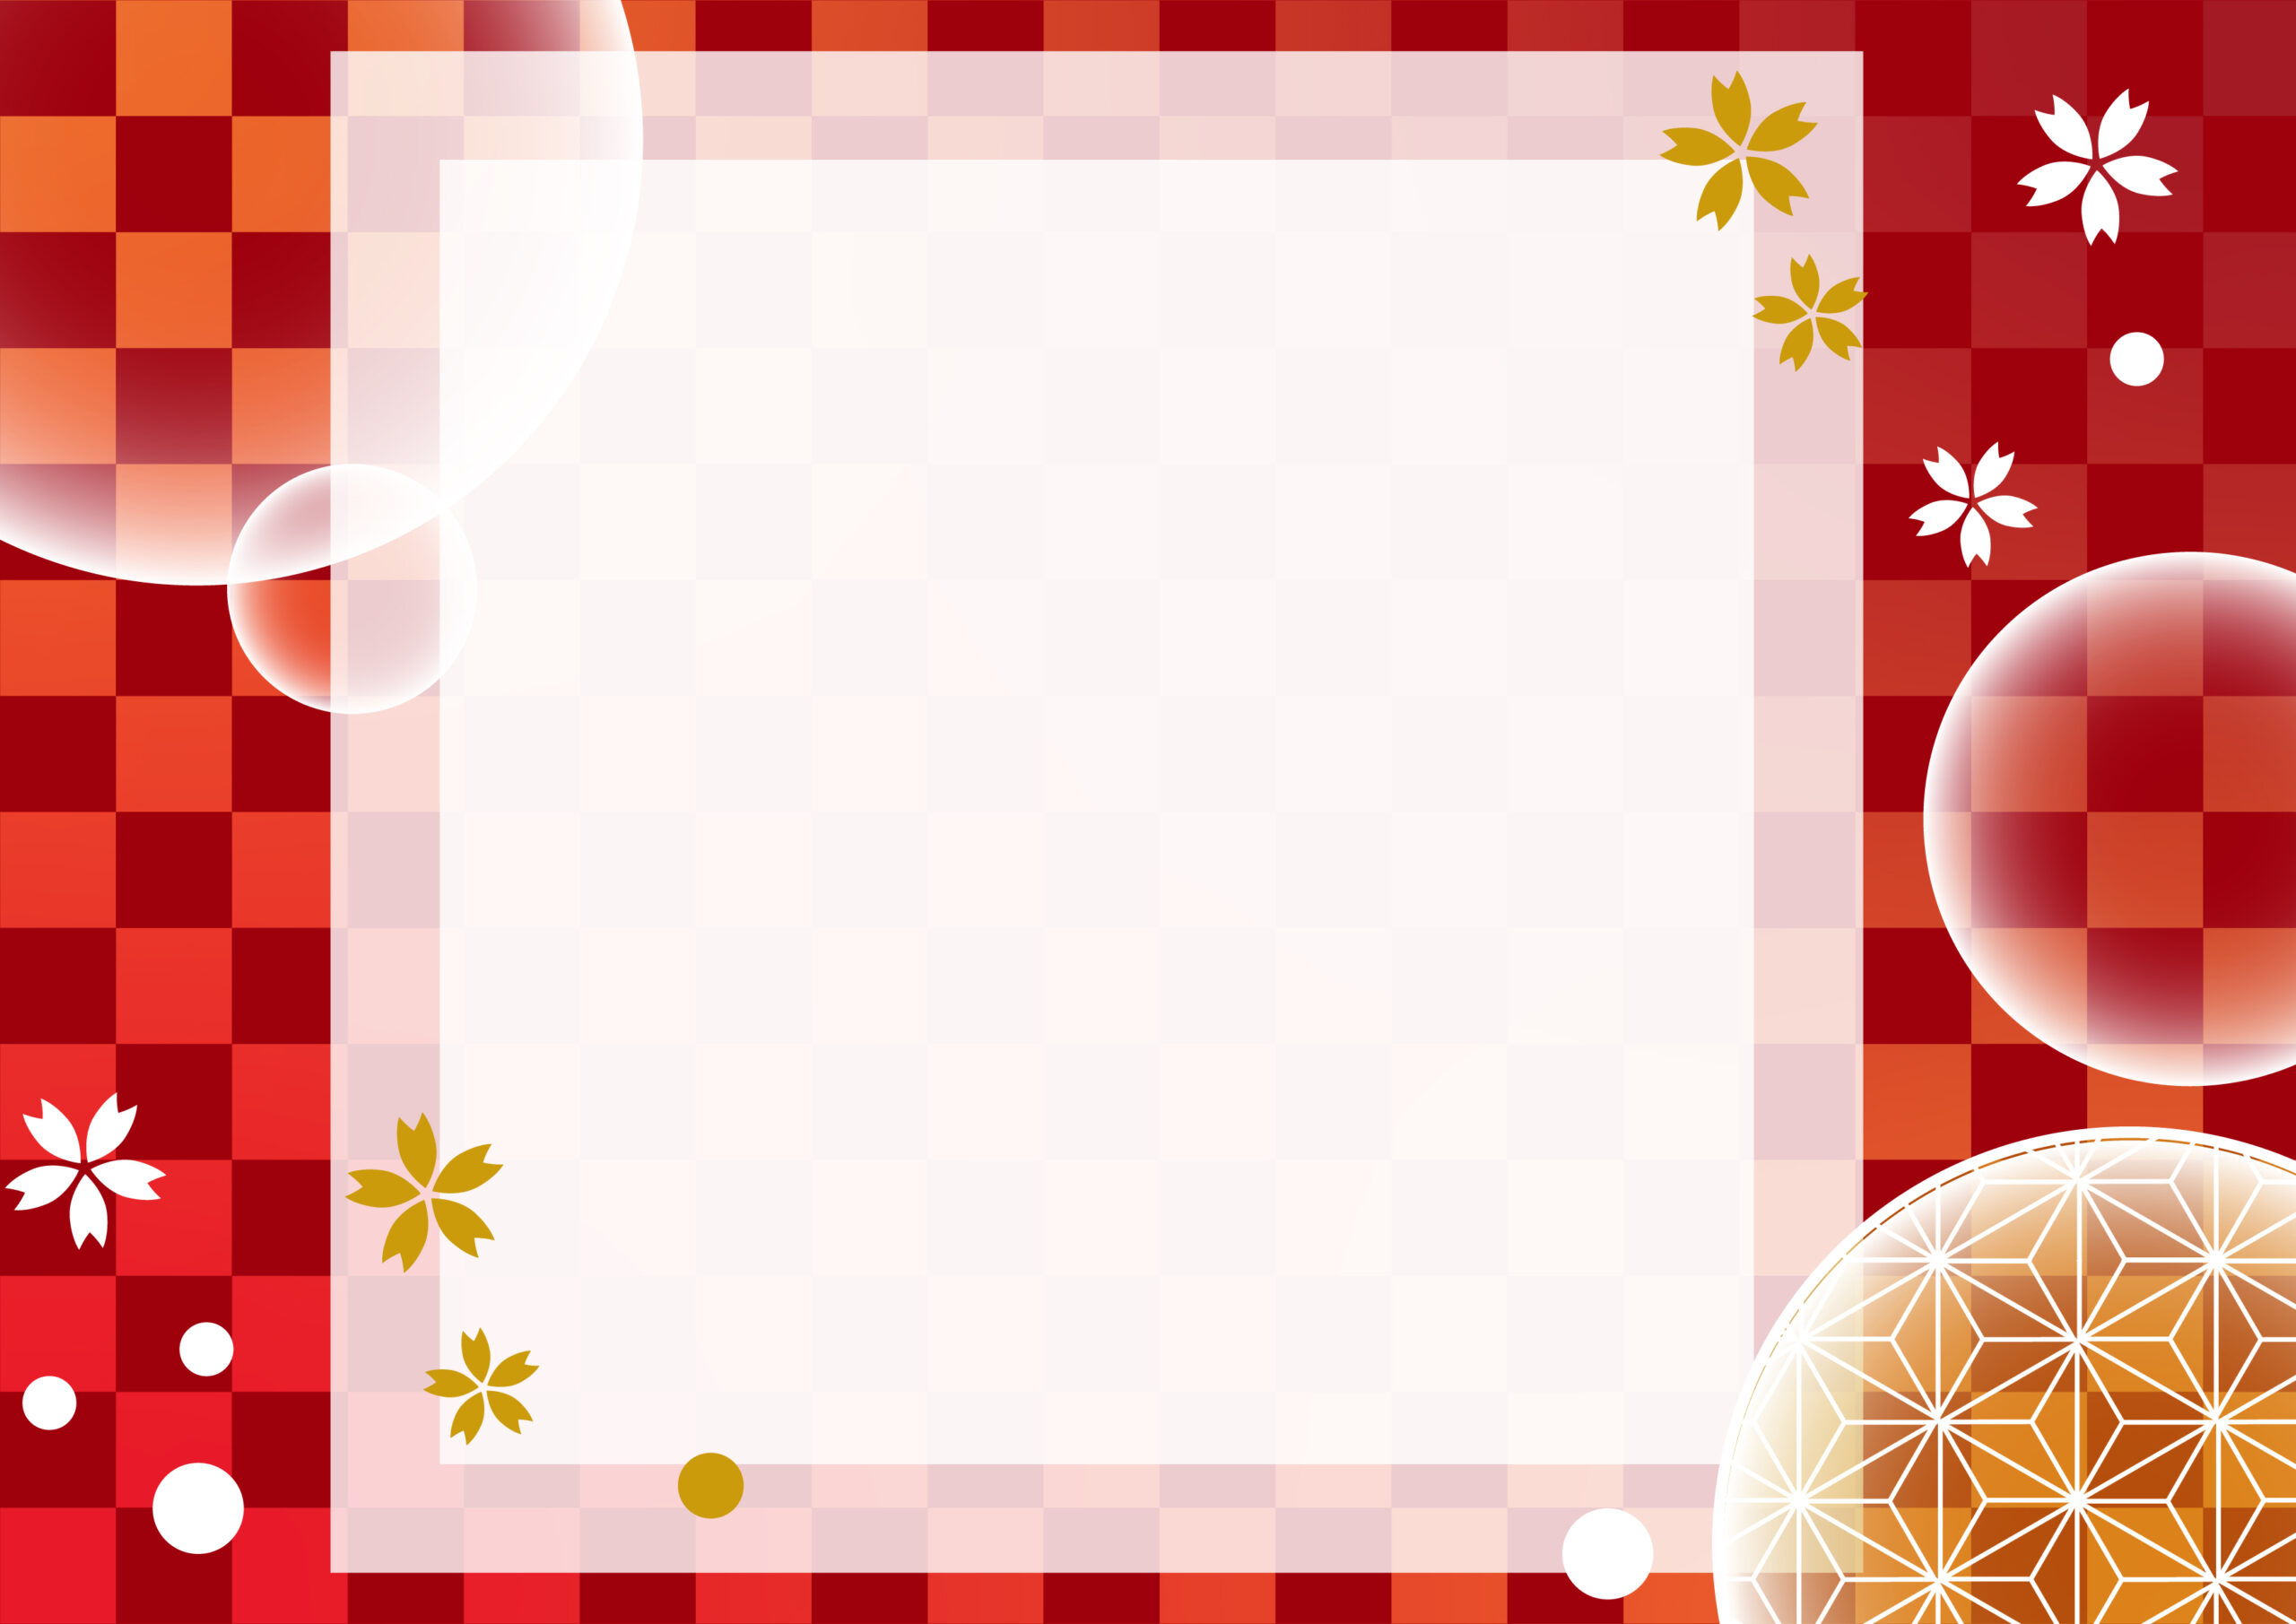 赤い市松模様の背景と桜、麻の葉模様のイラストが描かれたかわいいフレーム素材！着物や和小物を取り扱うお店のお休みや営業日のお知らせの張り紙、ホームページのご案内用のデザインにおすすめする和風の飾り枠になります。ダウンロード：JPG